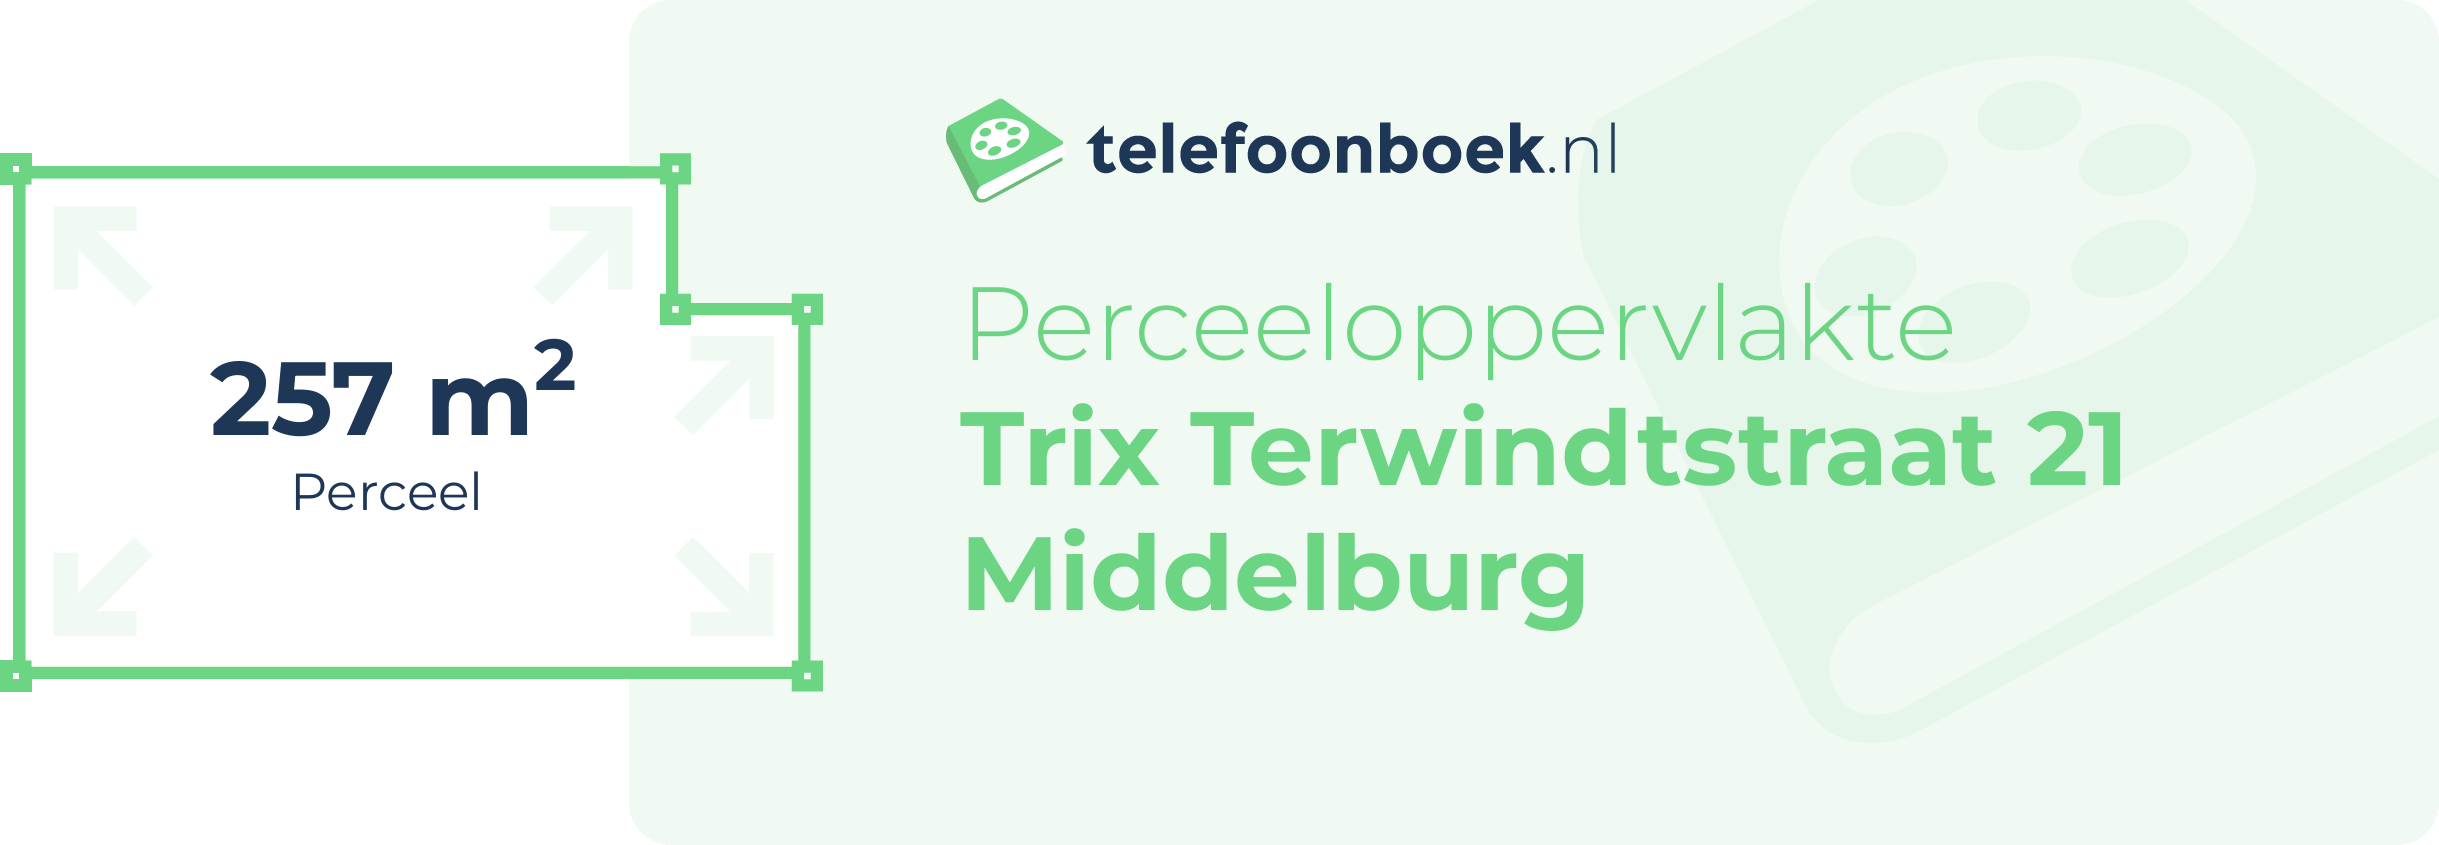 Perceeloppervlakte Trix Terwindtstraat 21 Middelburg